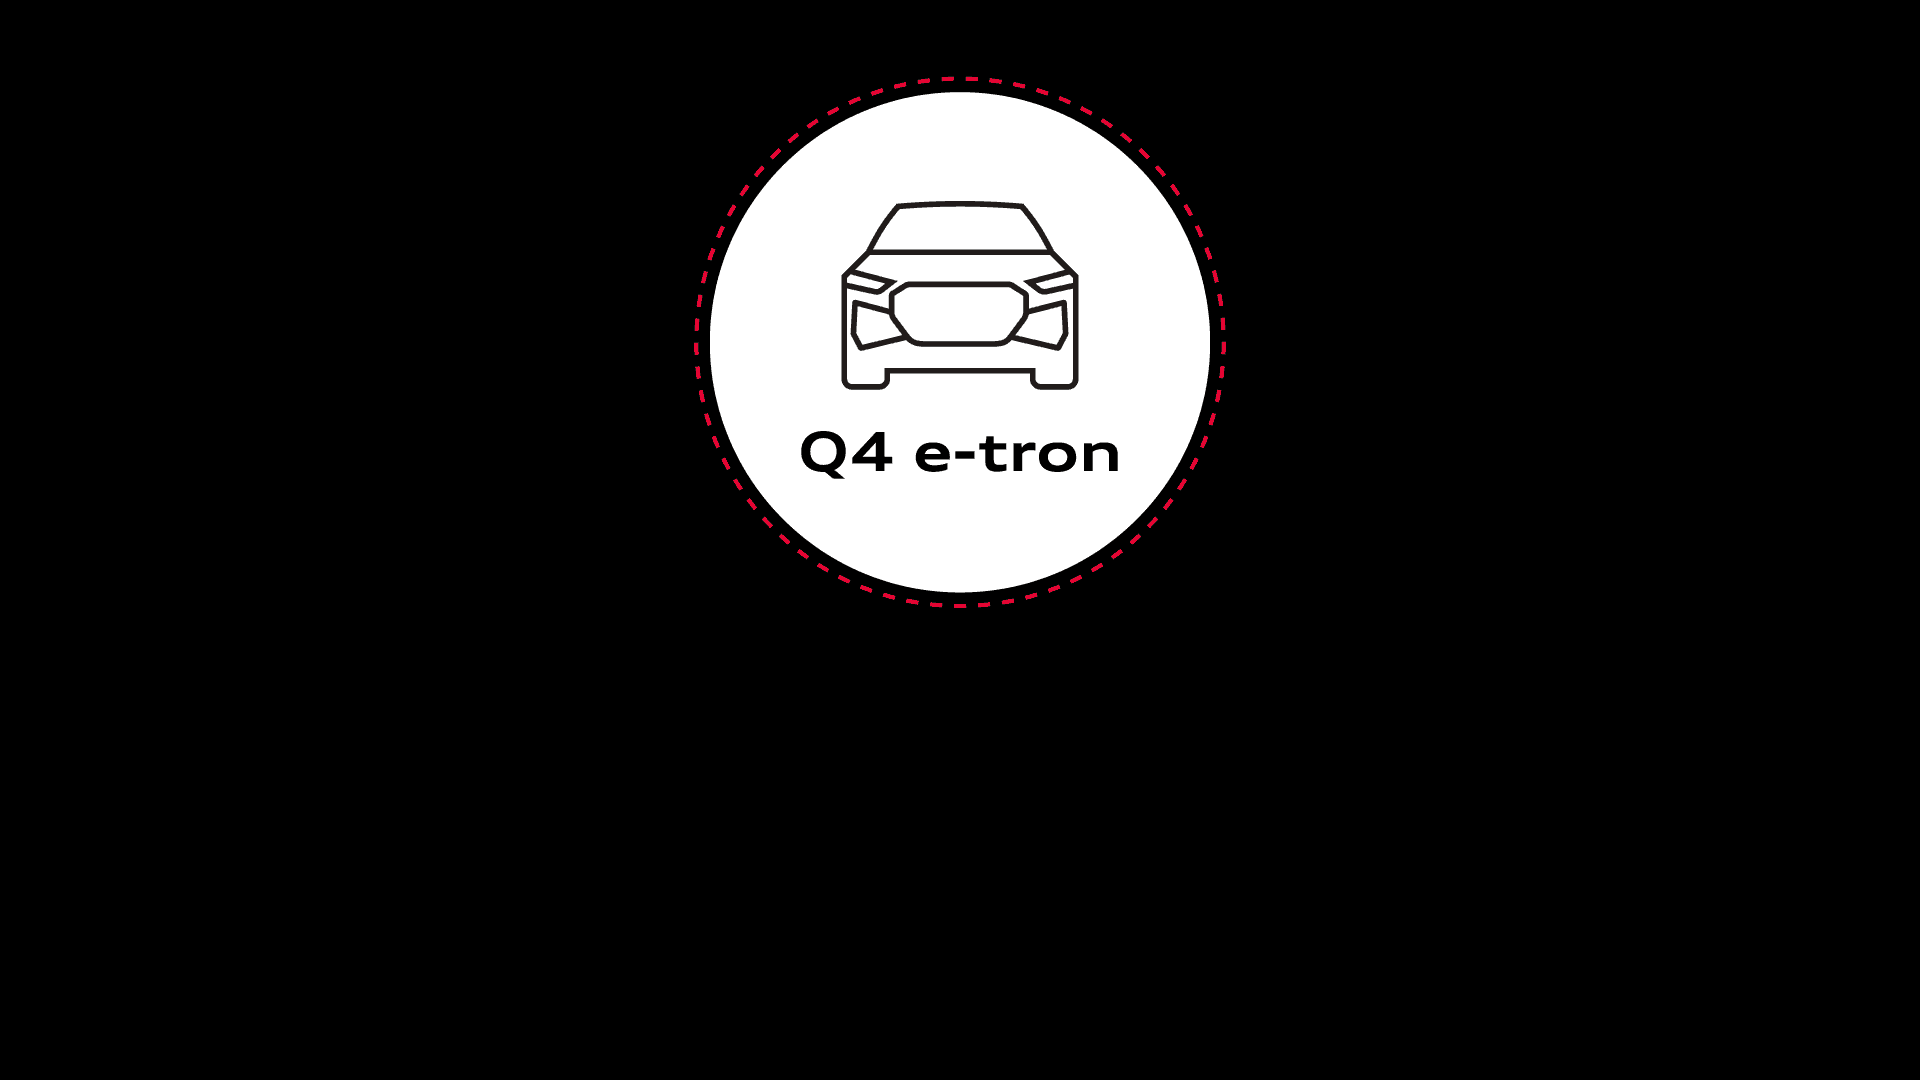 Ein Schaubild zeigt in stilisierter Form die vier Lebenszyklusphasen des Audi Q4 e-tron.